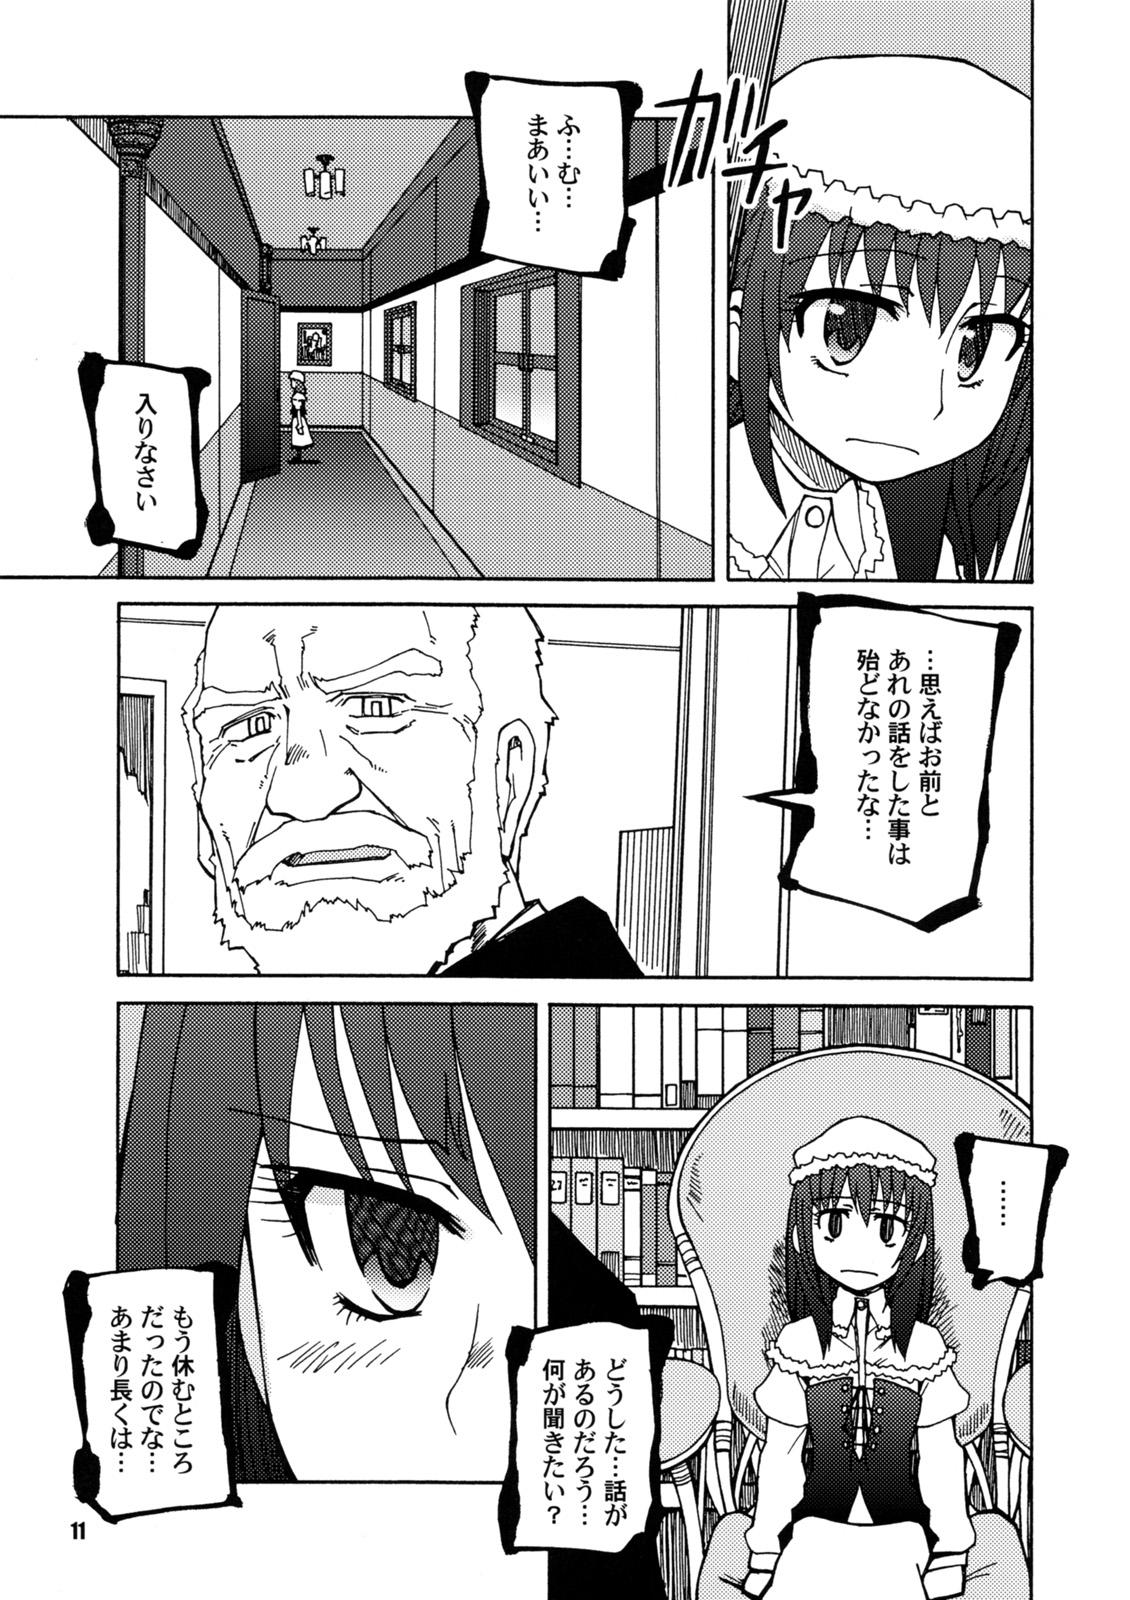 Chudai SEASON OF THE WITCH - Umineko no naku koro ni Pickup - Page 10